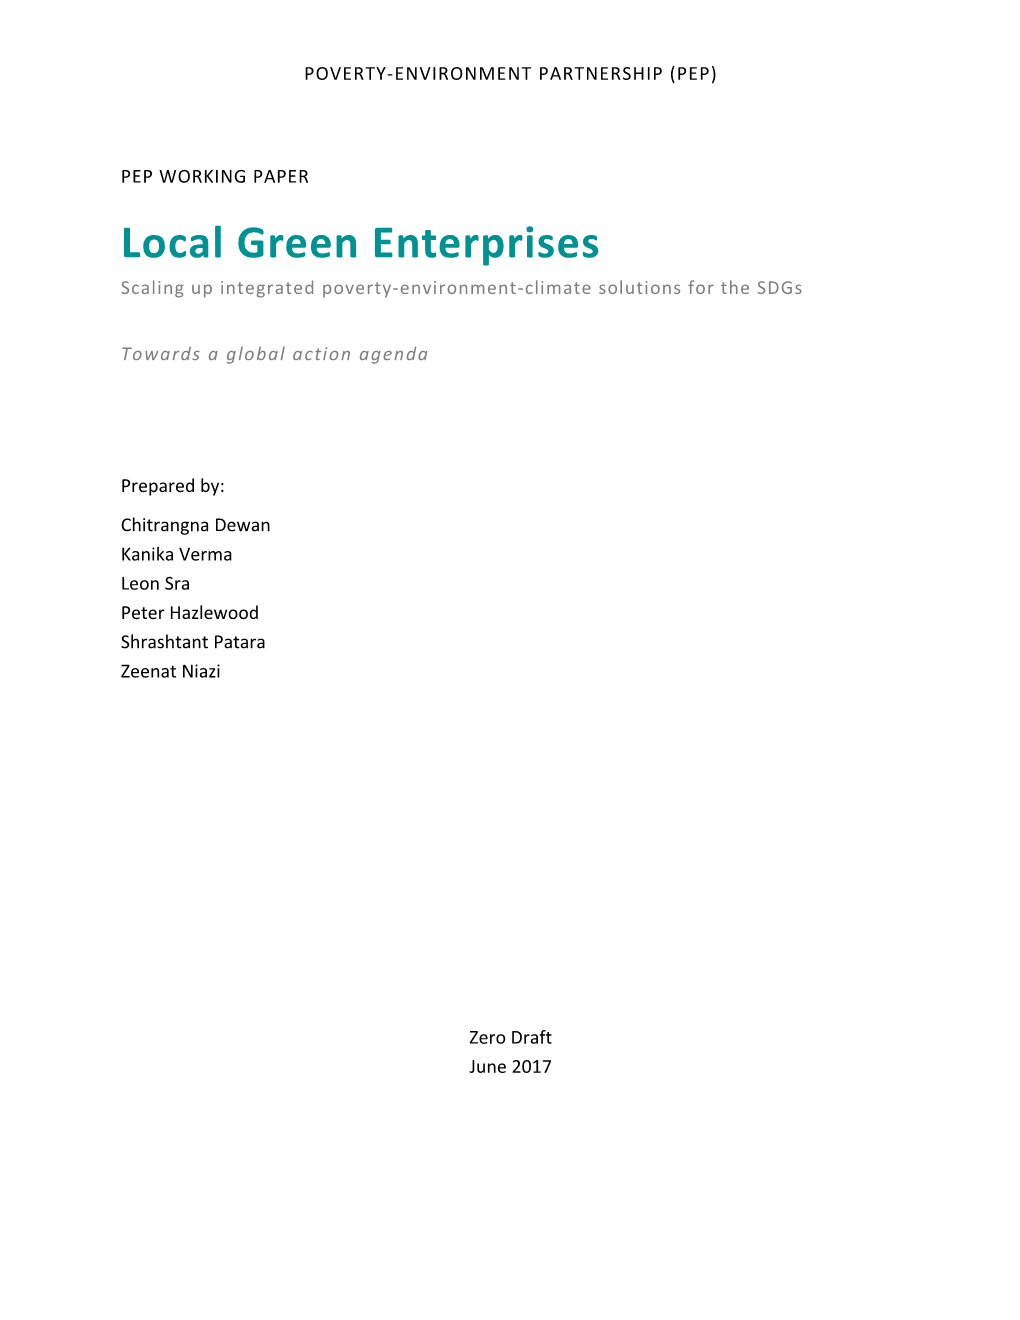 Local Green Enterprises Zero Draft